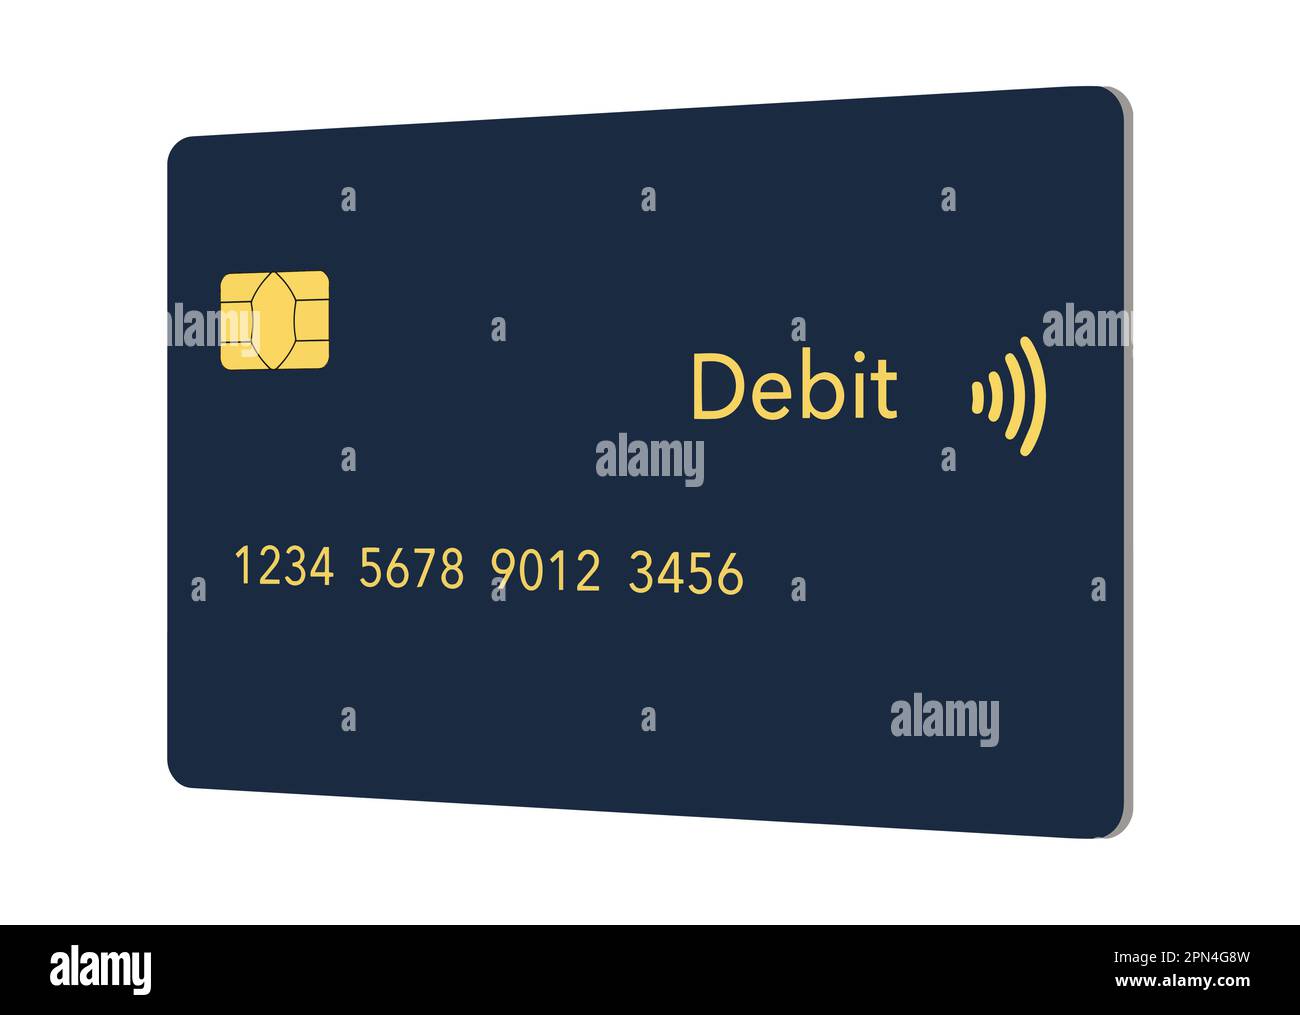 Hier sehen Sie eine generische, gefälschte, Kredit- oder Debitkarte, die realistisch gestaltet ist und eine Vektordarstellung darstellt. Stock Vektor